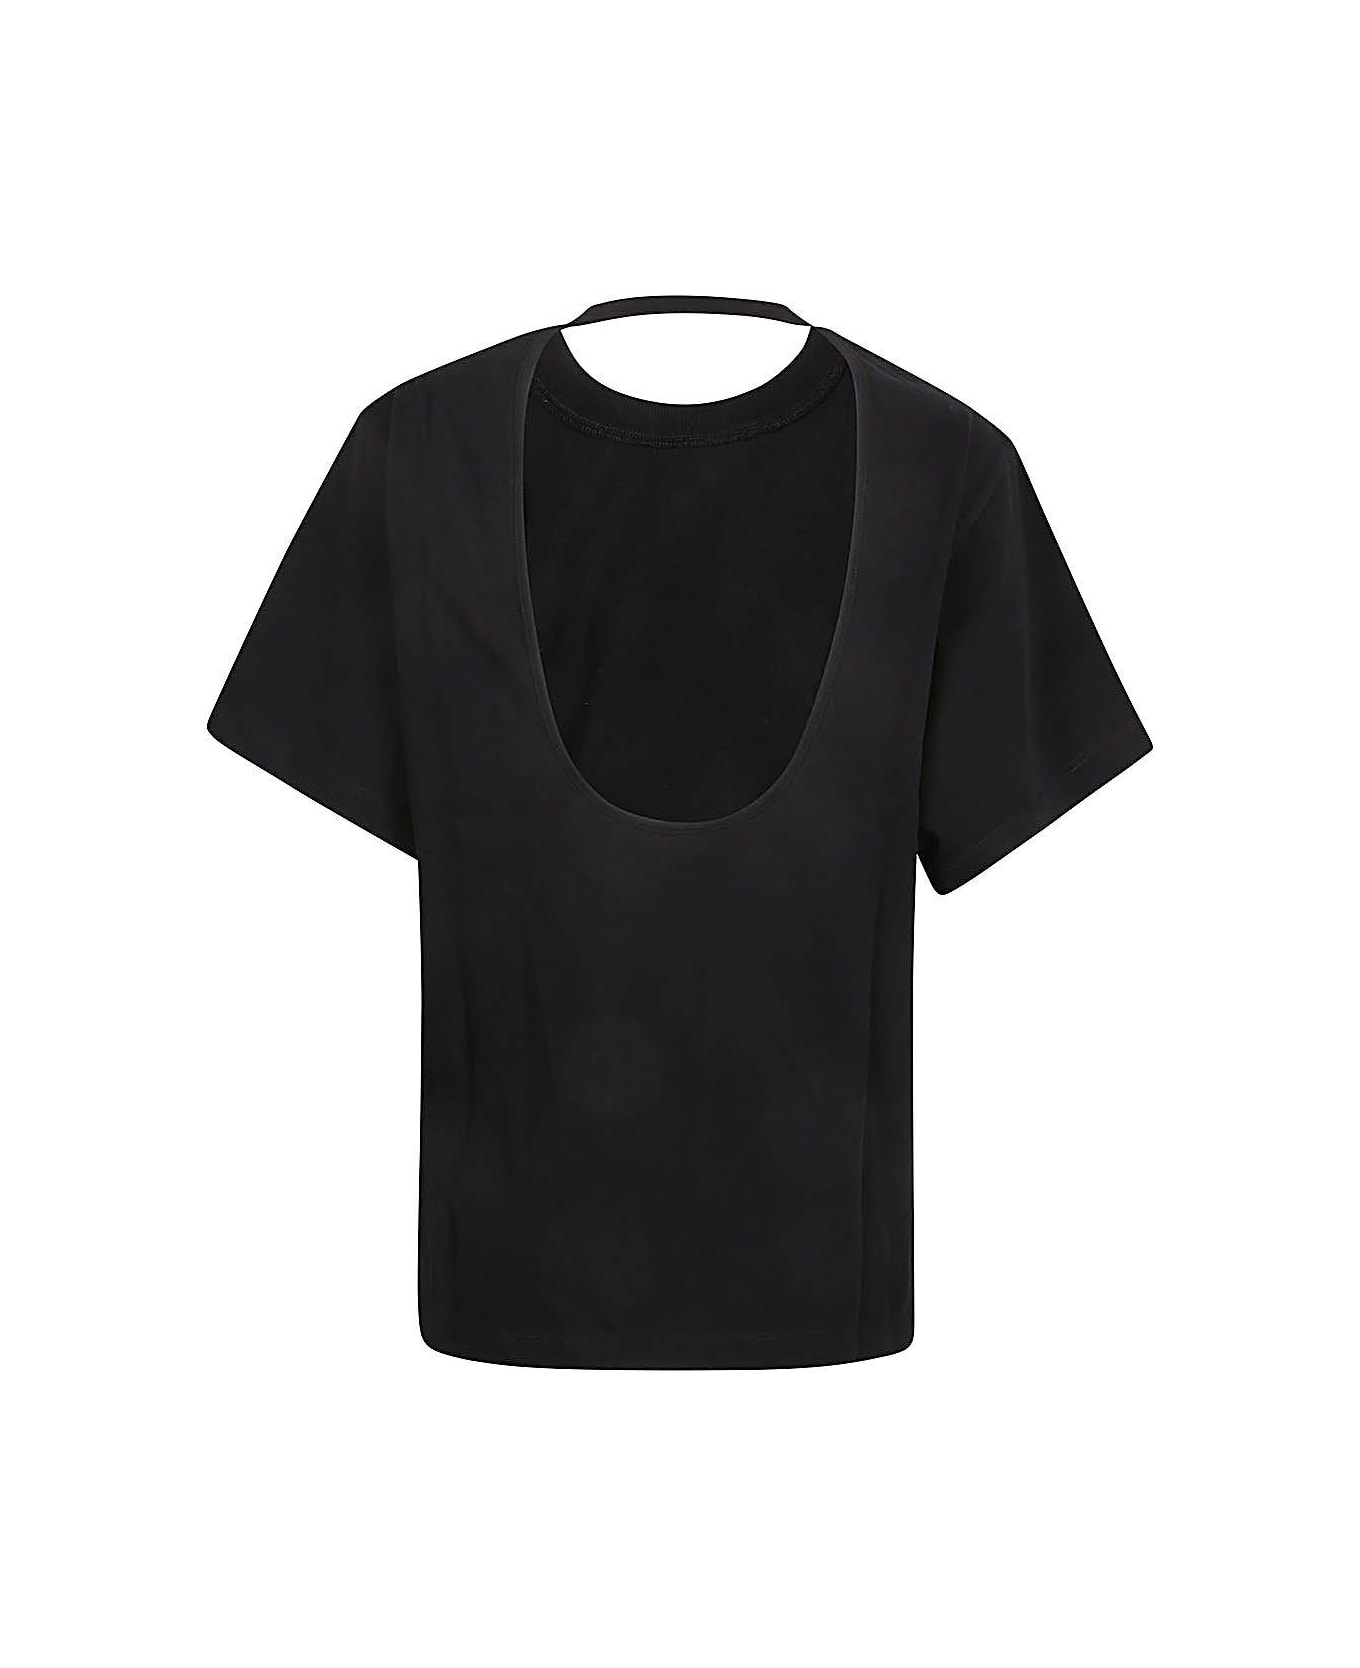 IRO Open Back Short-sleeved Top - Black